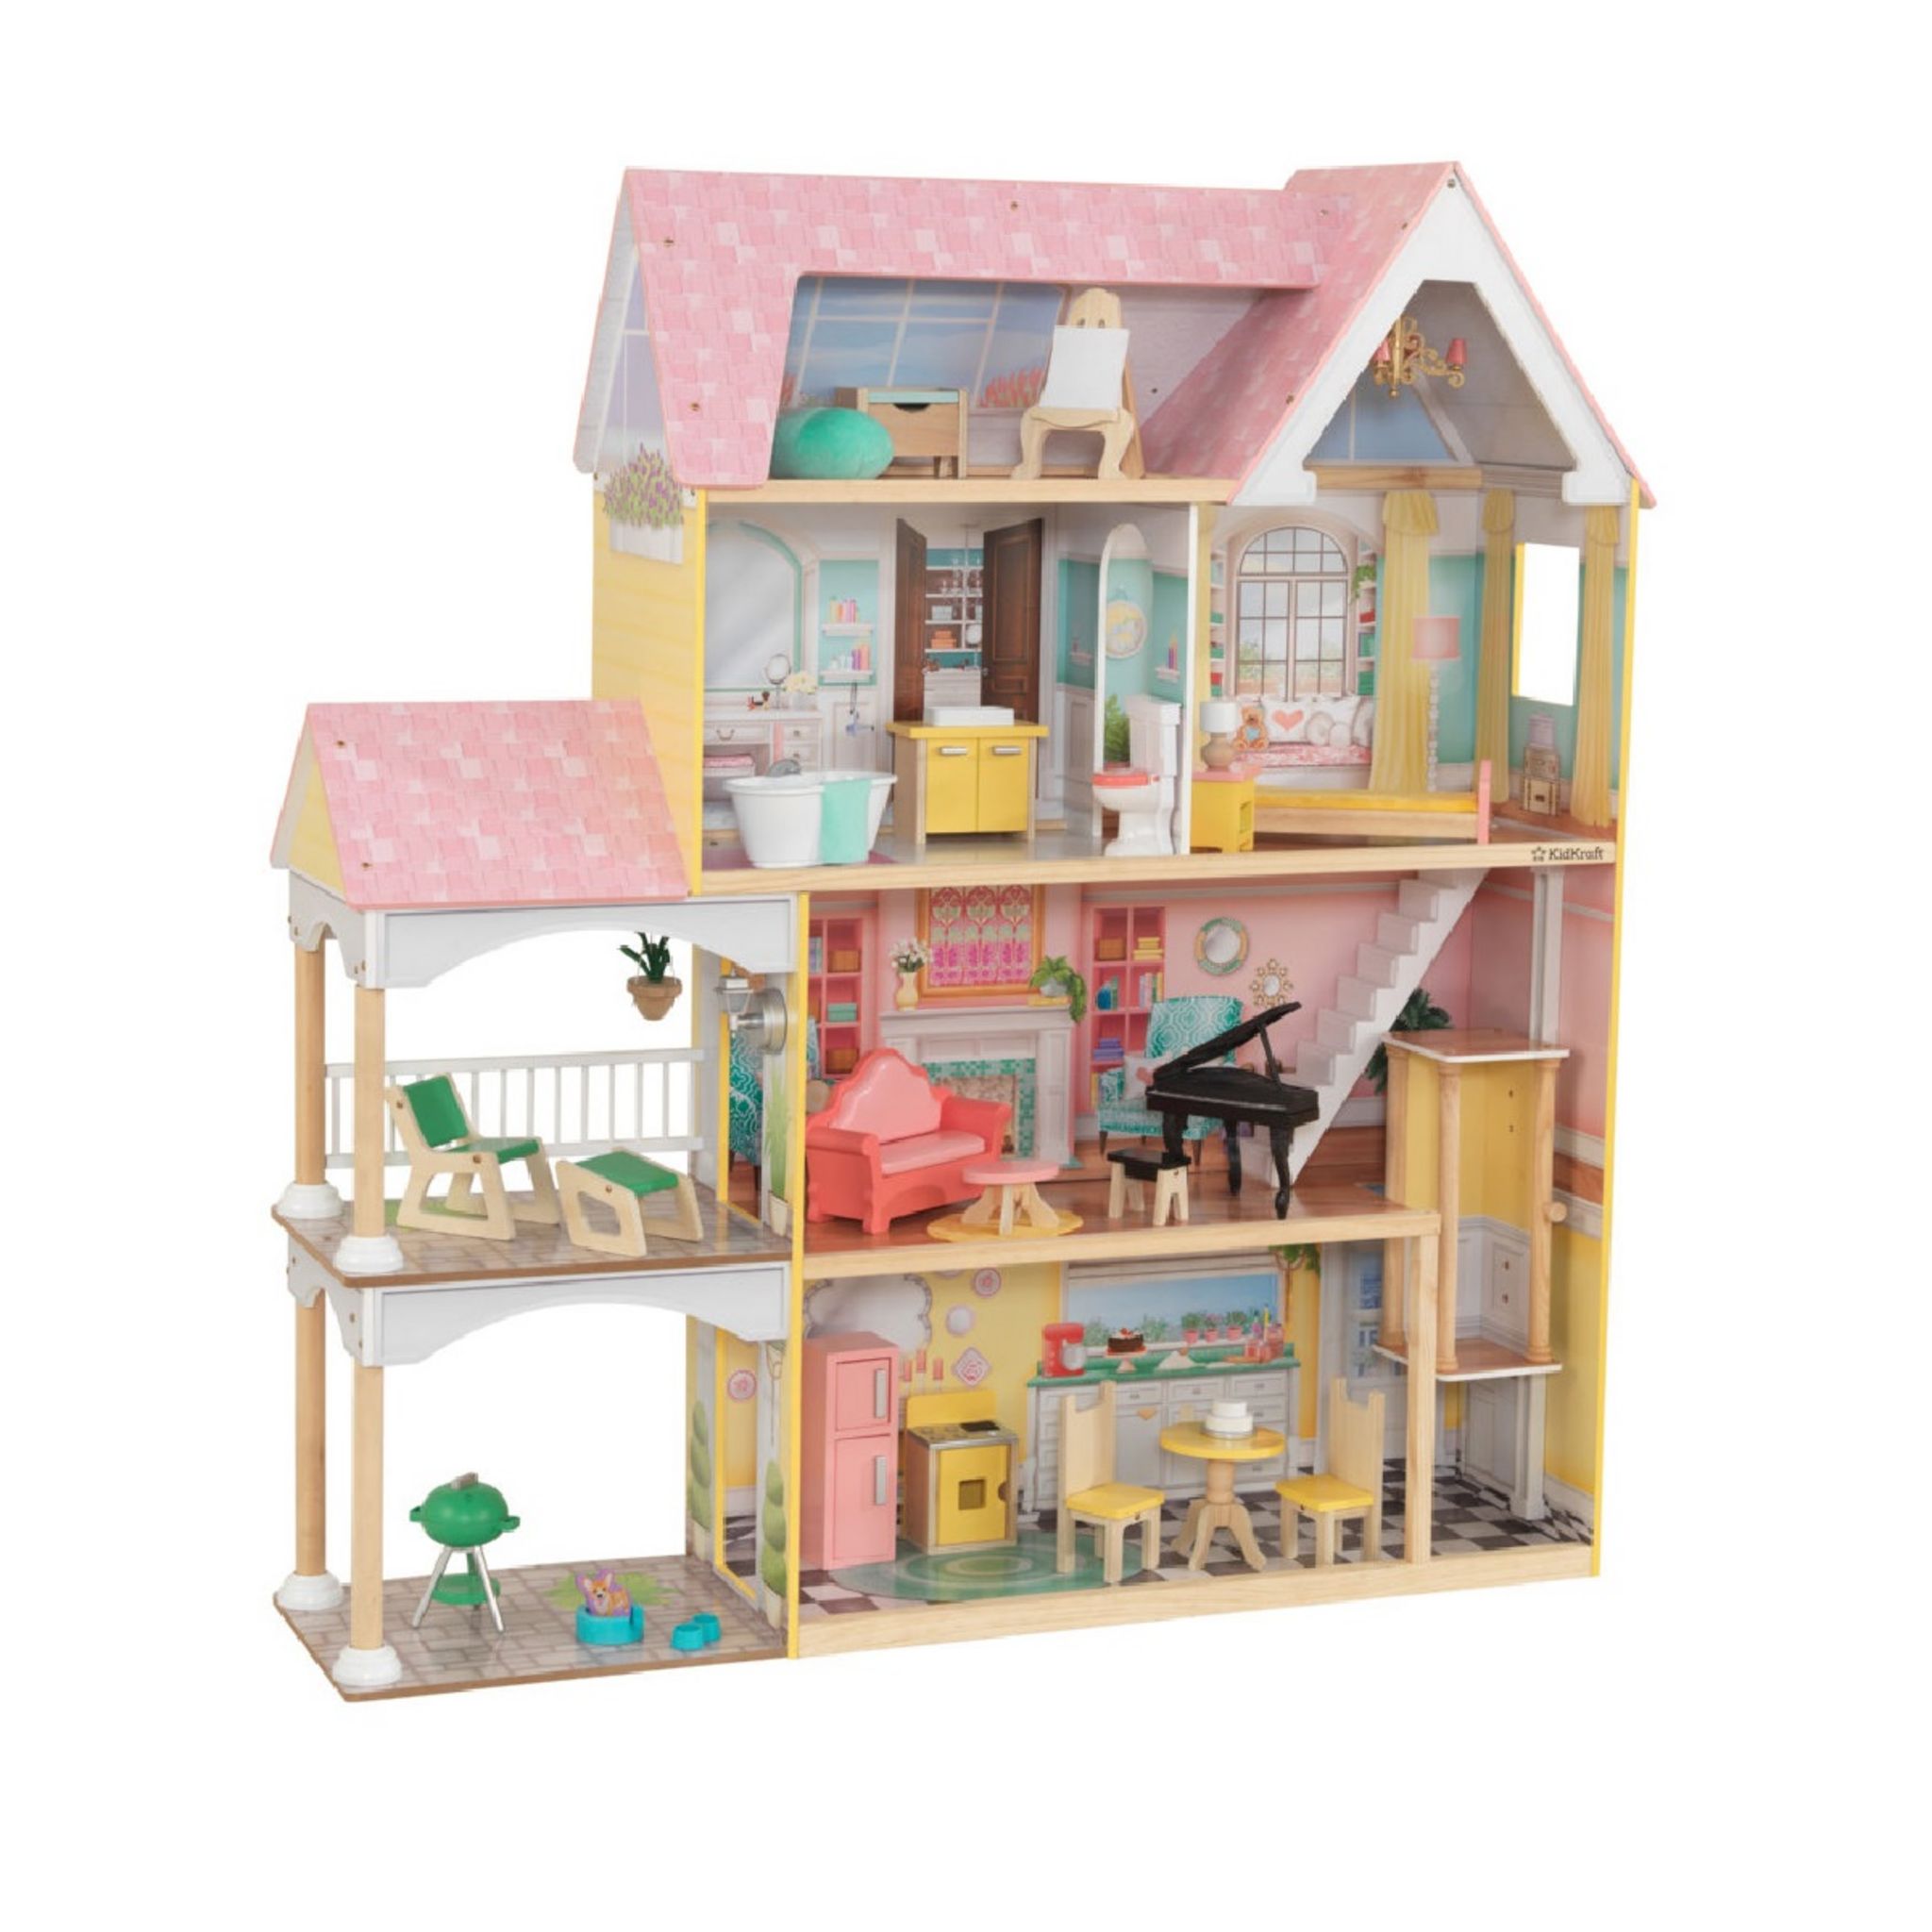 Maisons de poupées - Bm009 - Maison Stapleford en kit